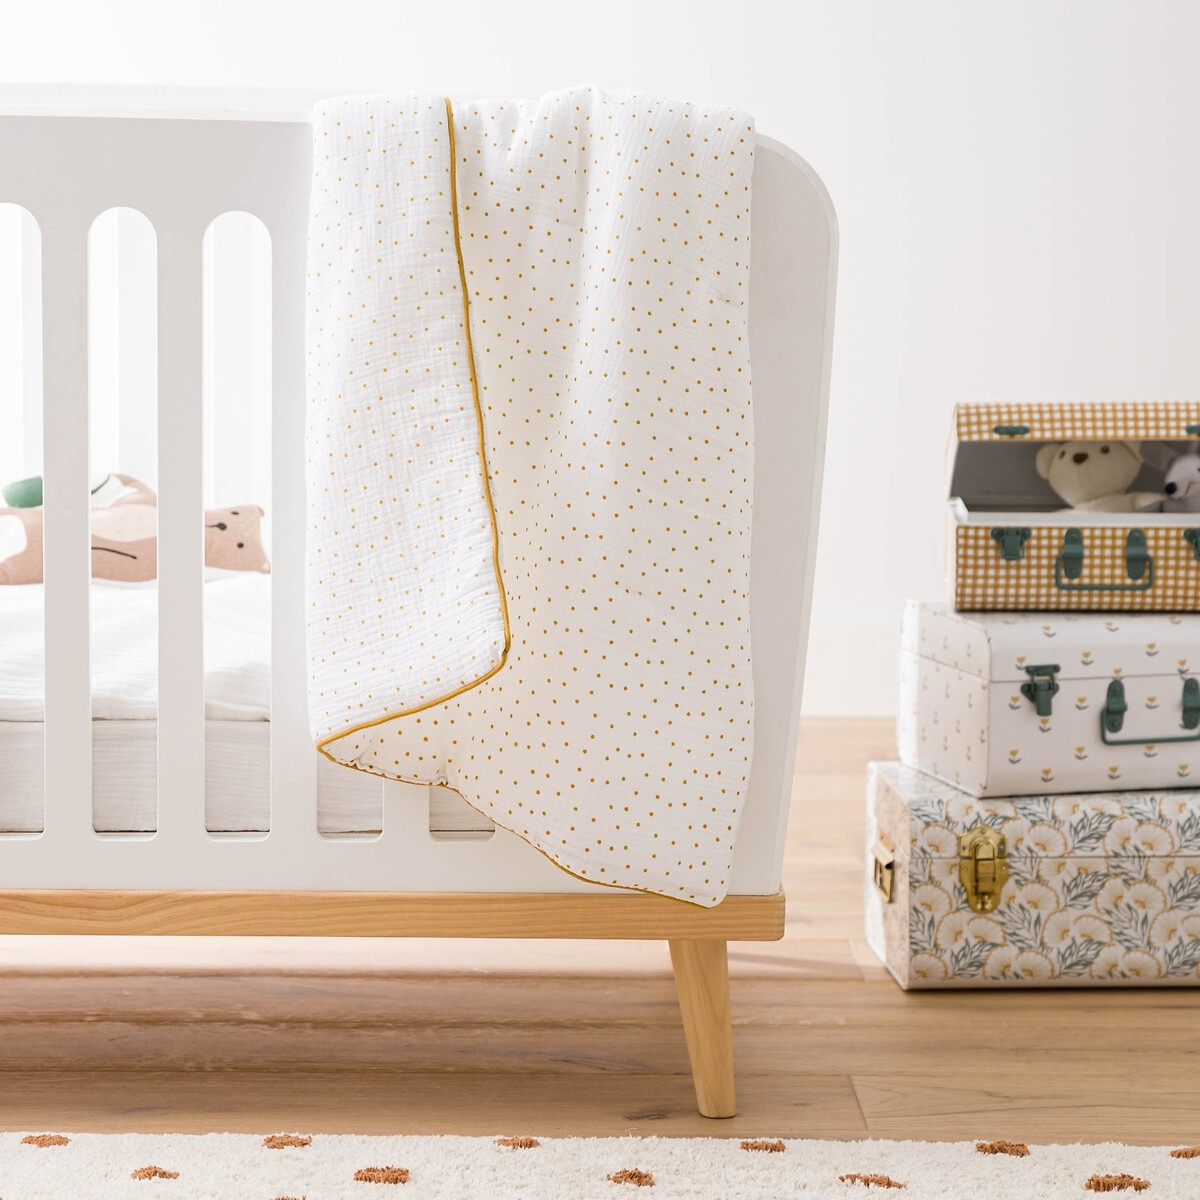 Nola Cotton Musllin Baby Blanket - image 1